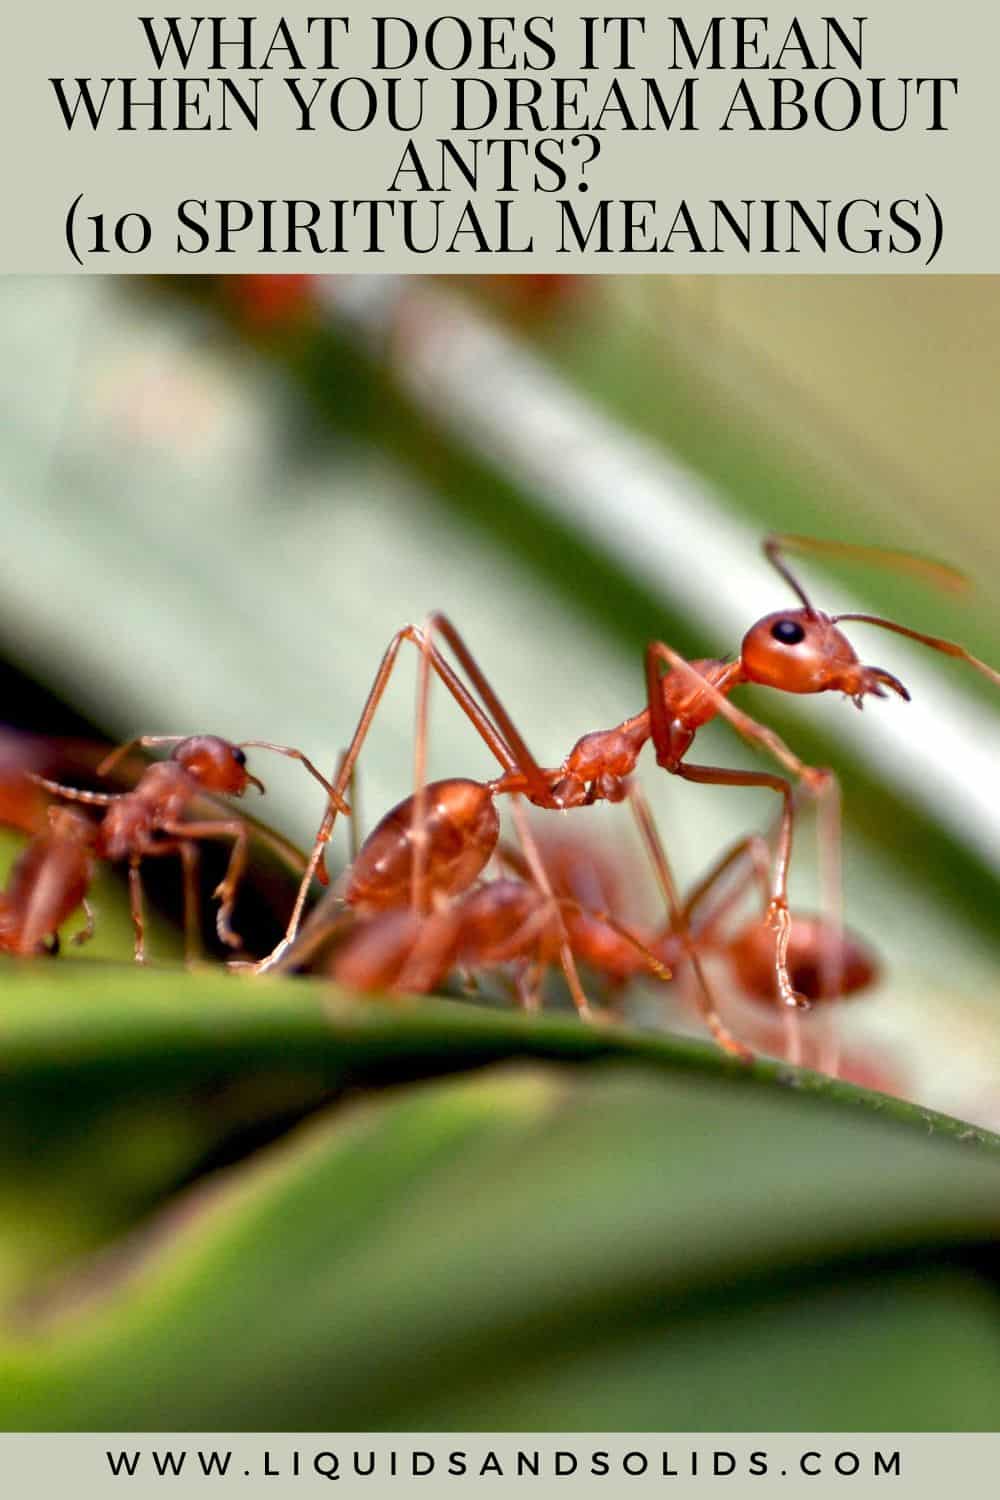  Que significa cando soñas con formigas? (10 significados espirituais)